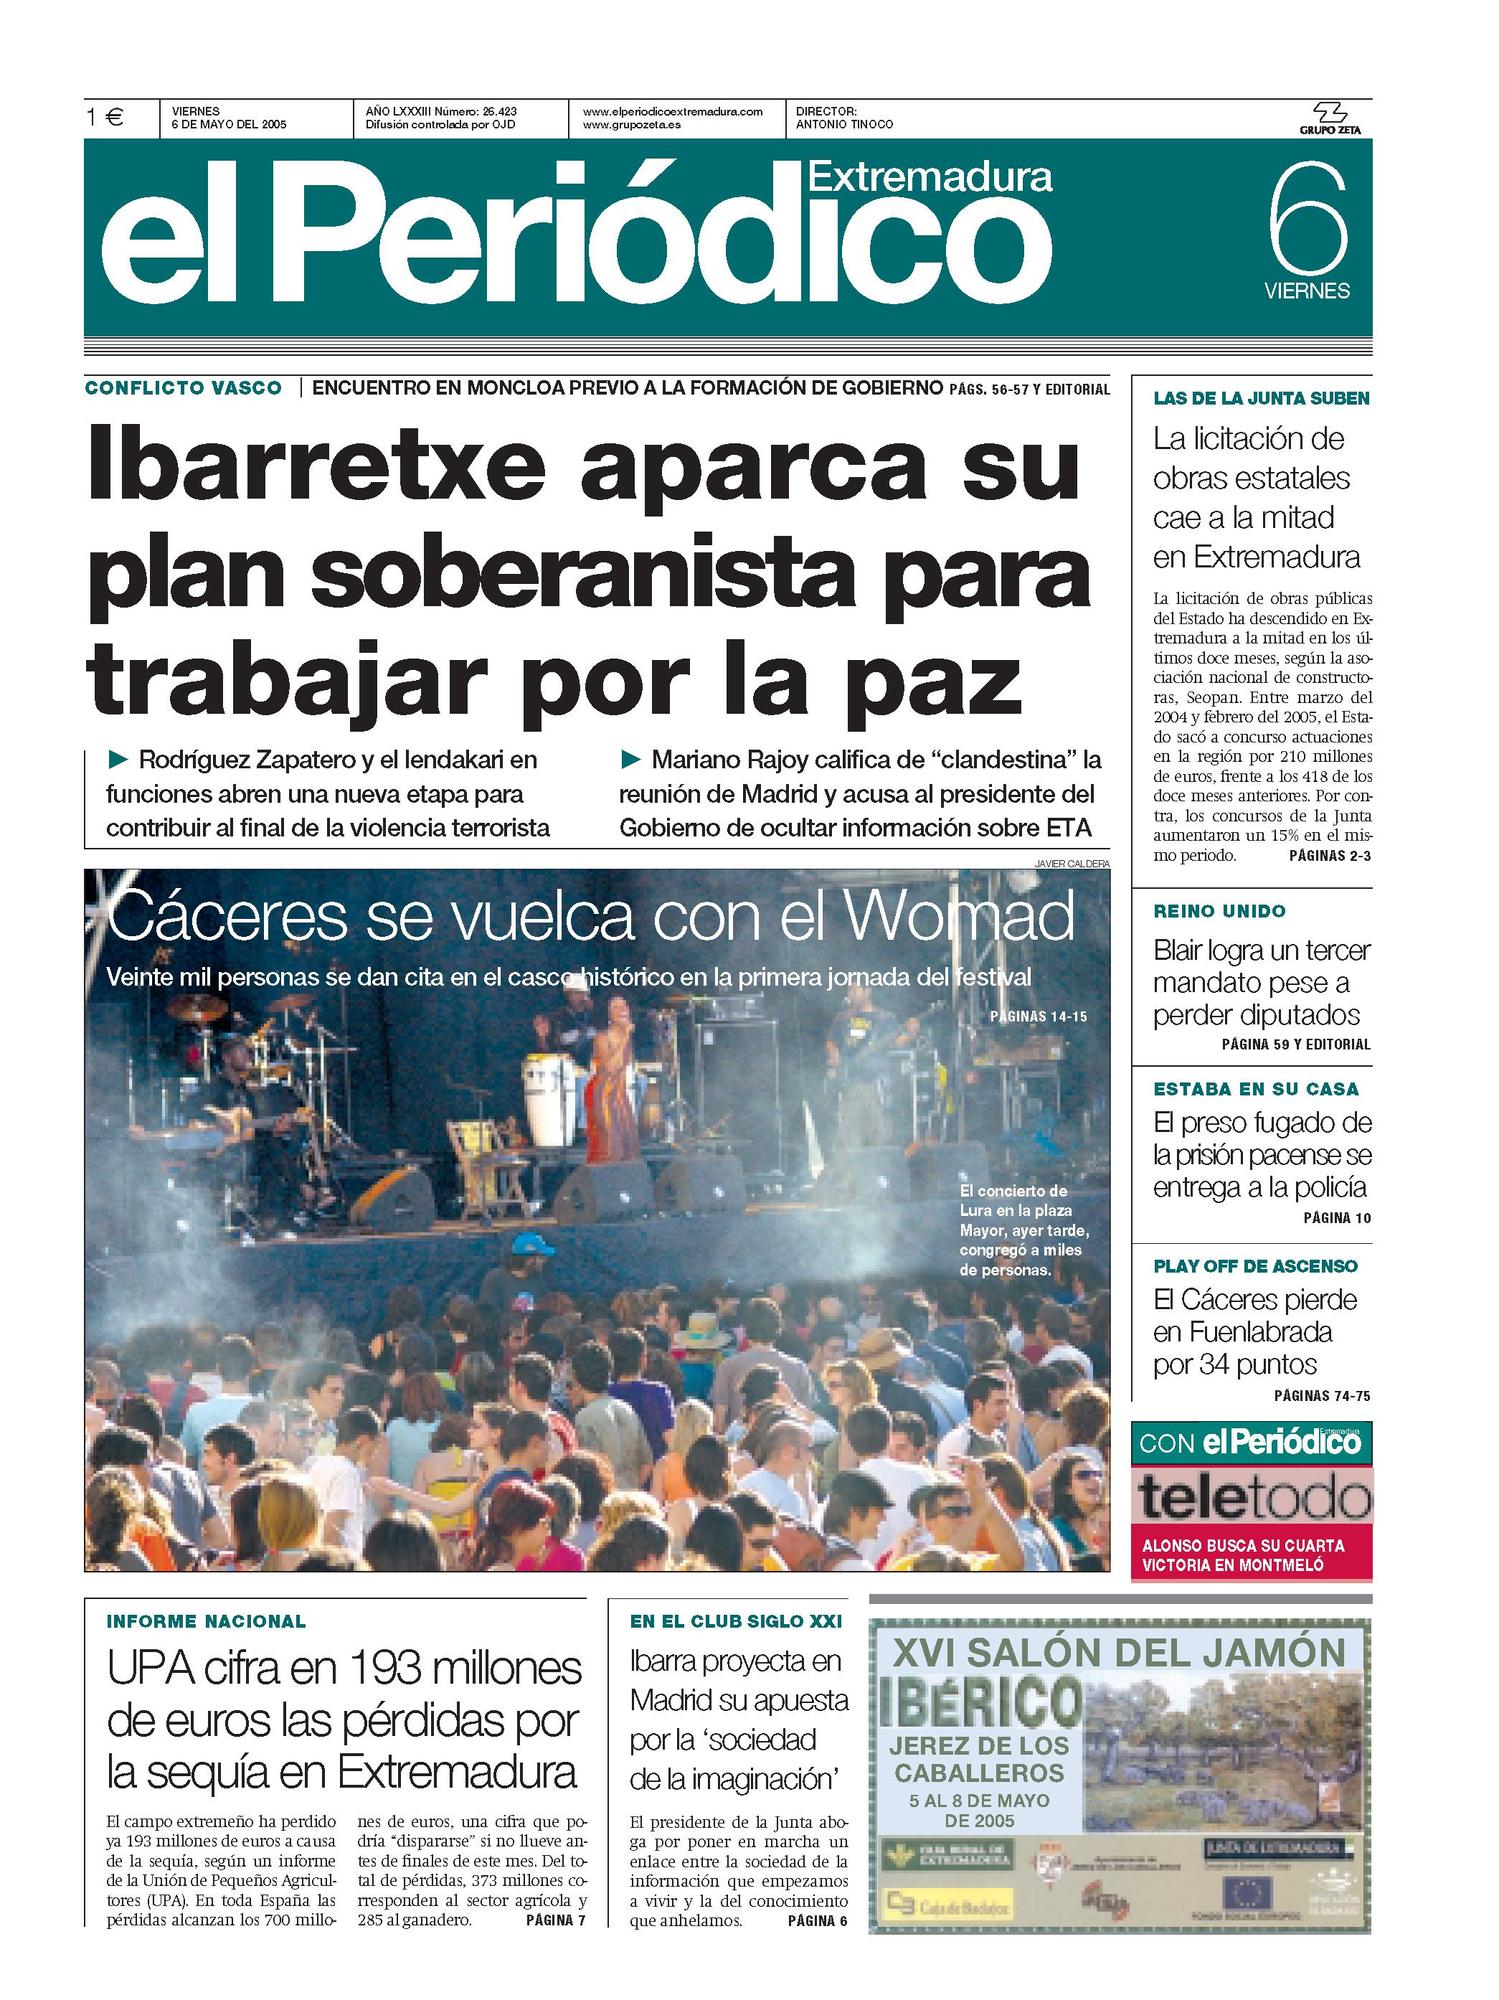 Portada de El Periódico Extremadura el 6 de mayo de 2005.